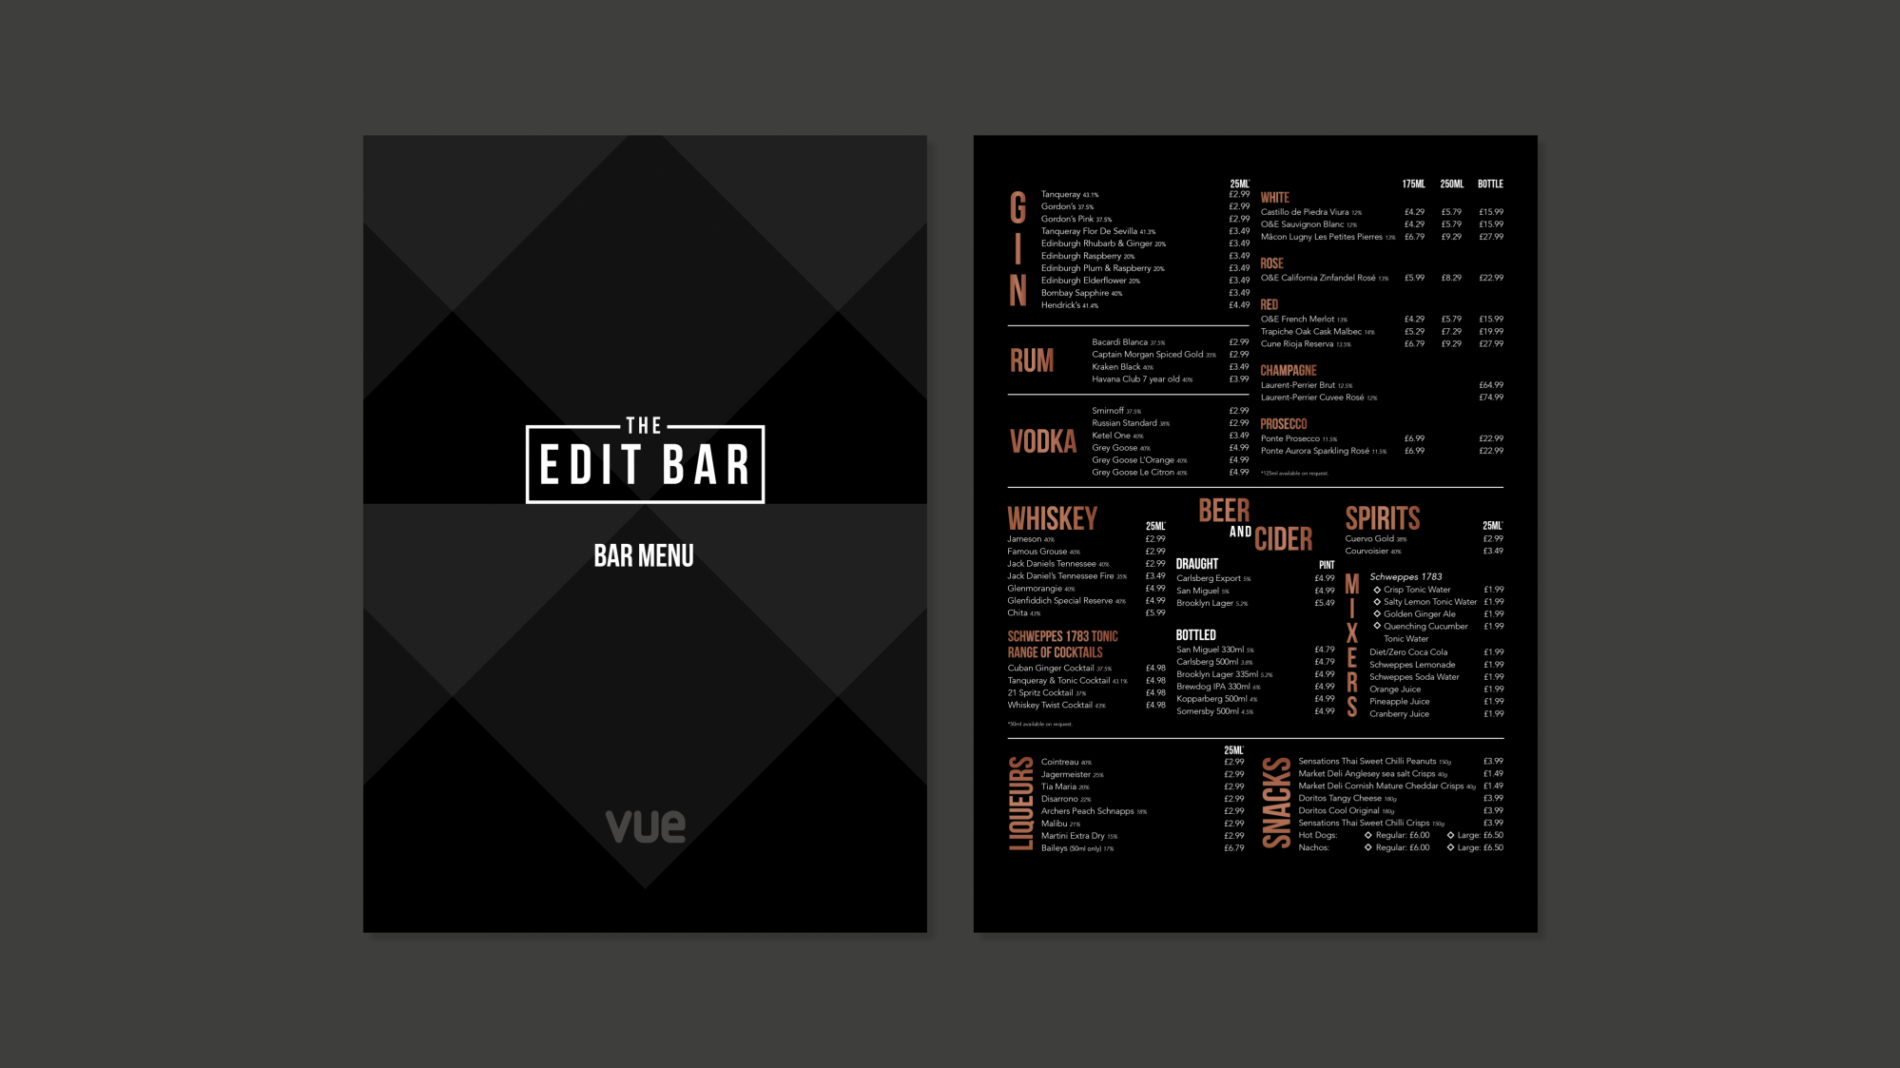 The Edit Bar main menu